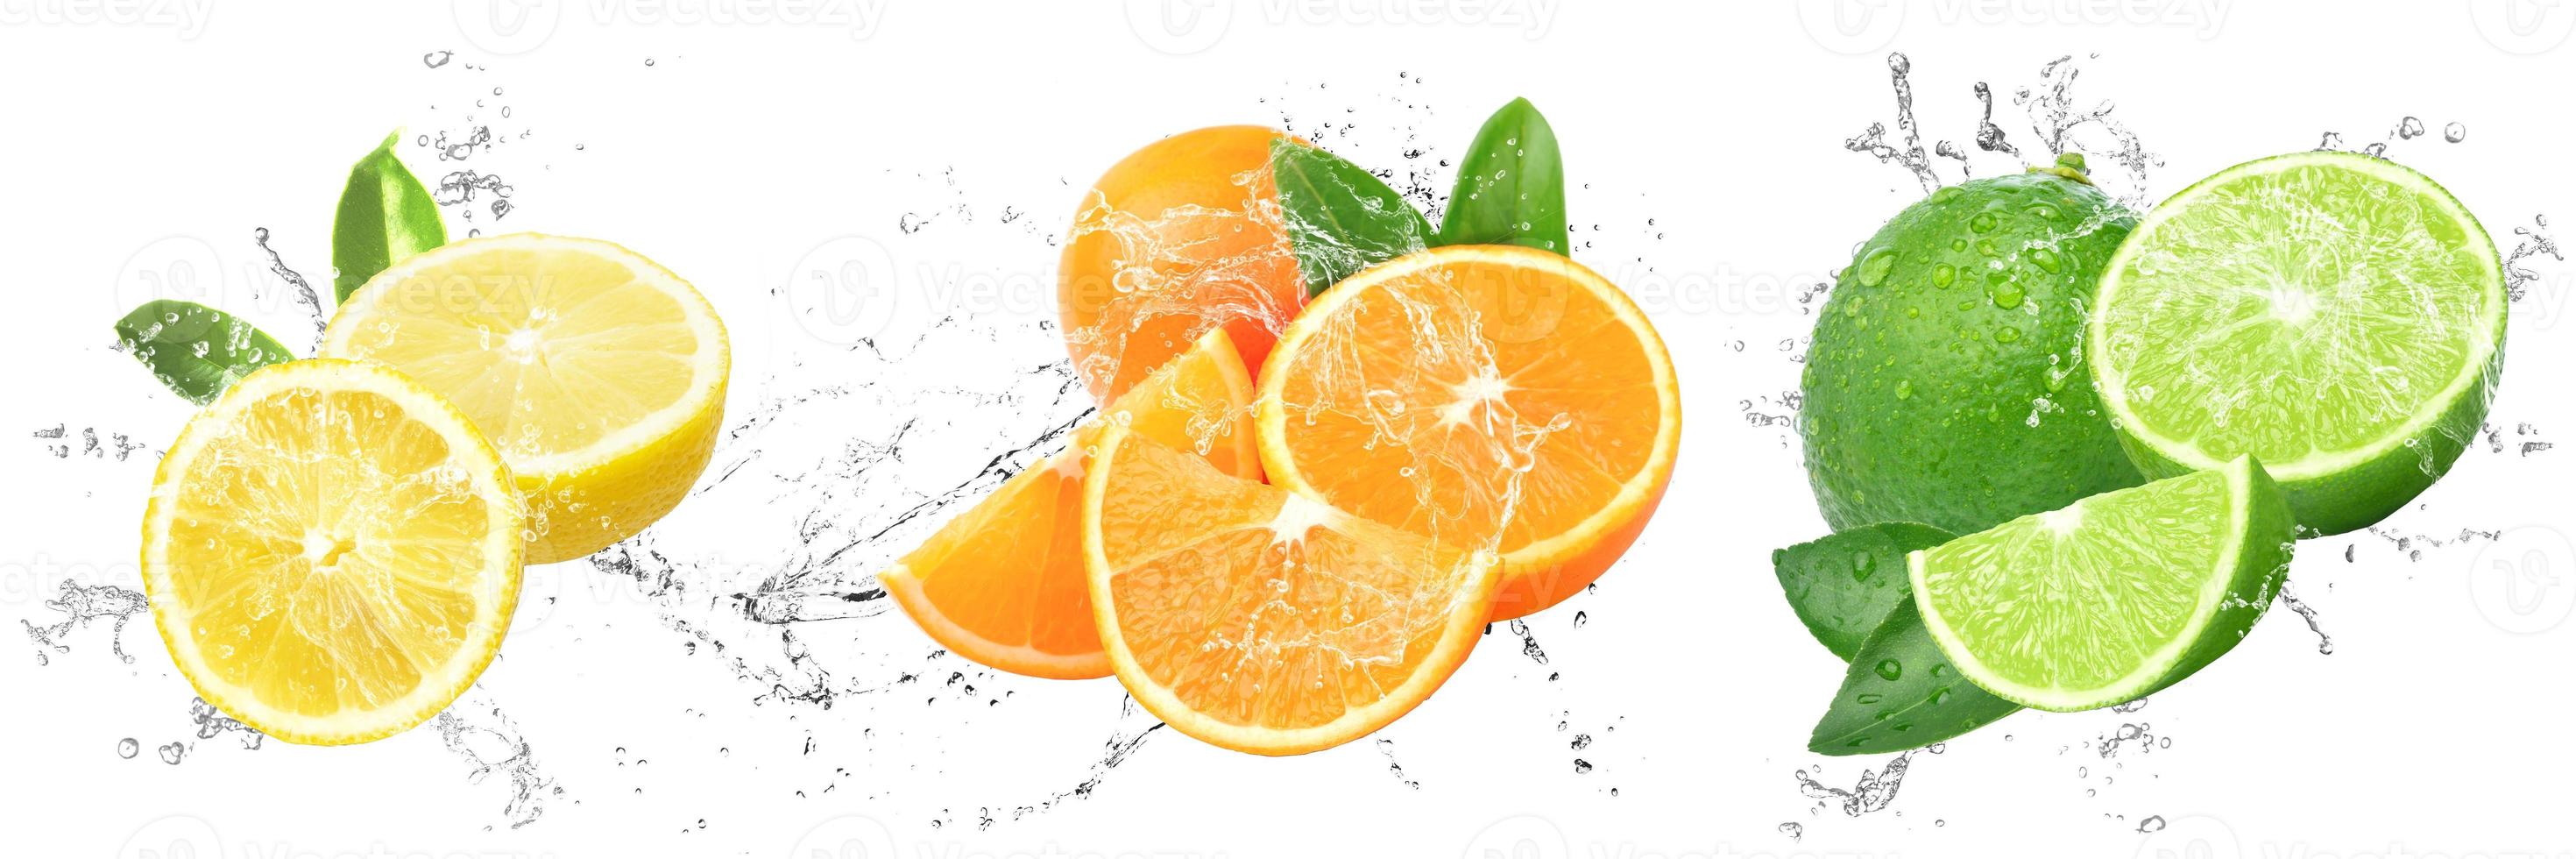 Fresh Fruits with water splash on isolated white background, lemon, orange and lime photo